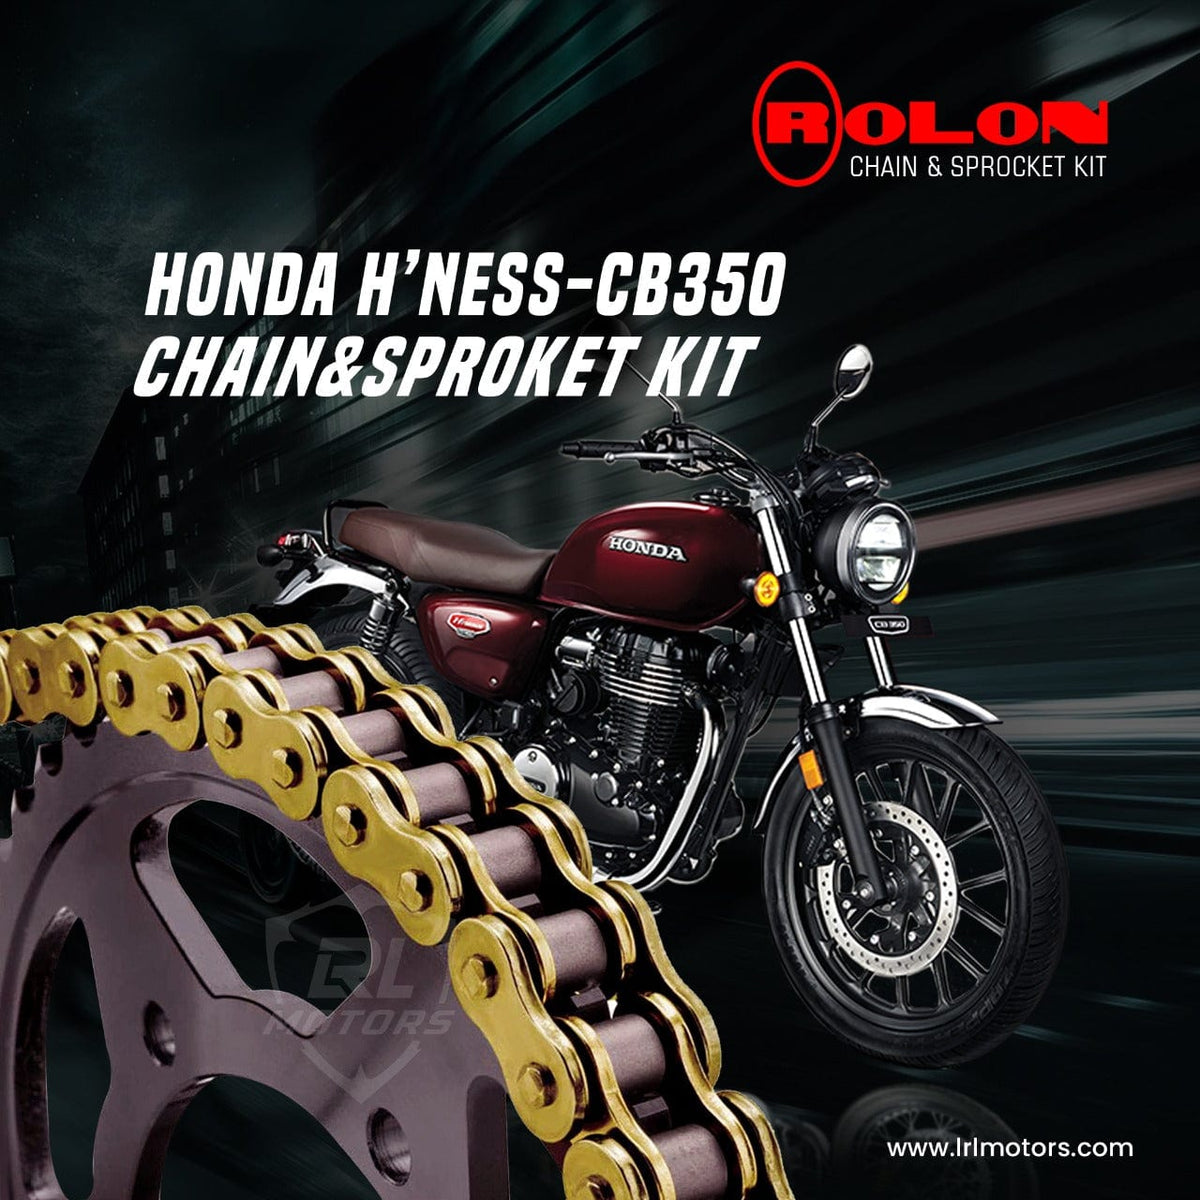 ROLON BRASS CHAIN SPROCKET KIT FOR HONDA HIGHNESS CB350 - LRL Motors